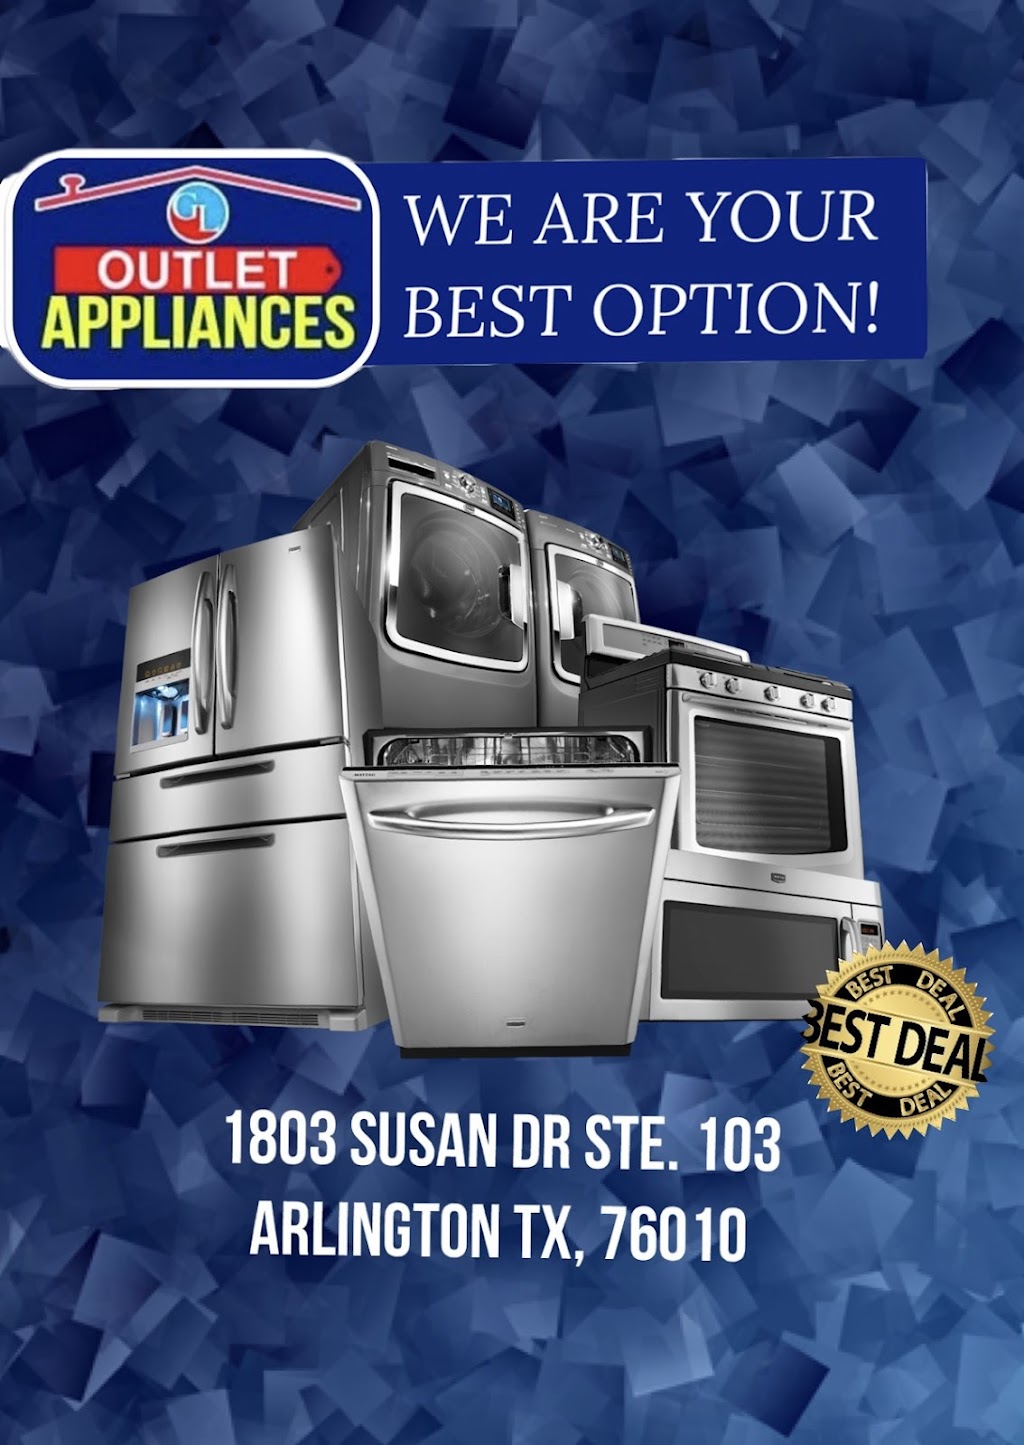 GL Outlet Appliances | 1803 Susan Dr suite 103, Arlington, TX 76010, USA | Phone: (469) 777-2828